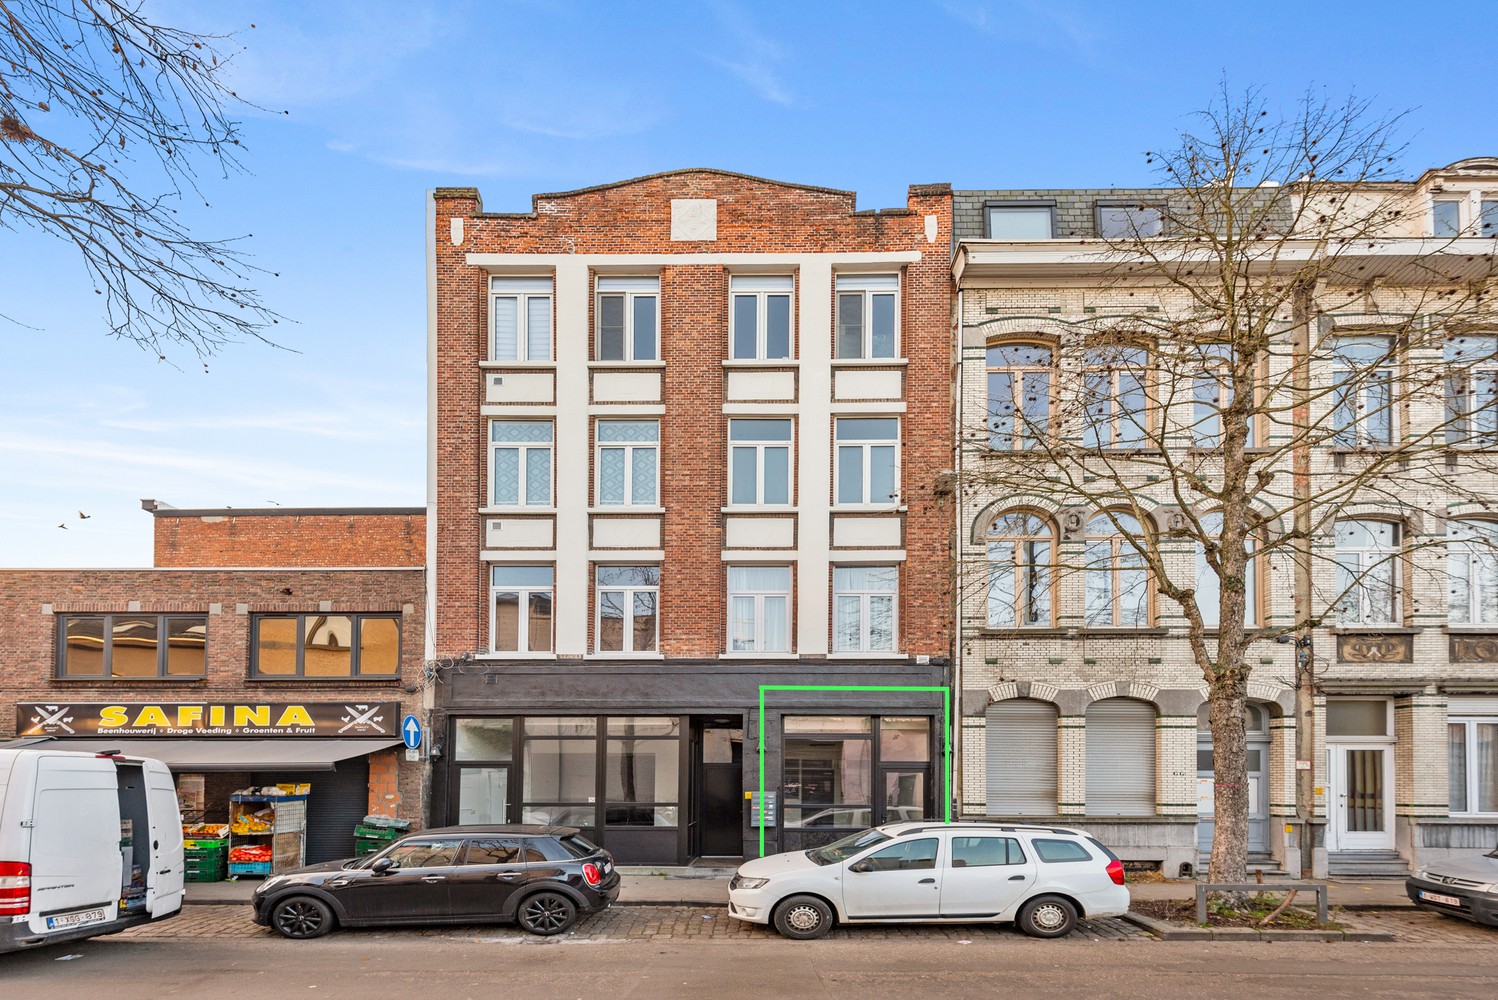 Commercieel gelijkvloers (24 m²) op de grens van 2018 Antwerpen en Borgerhout. afbeelding 1